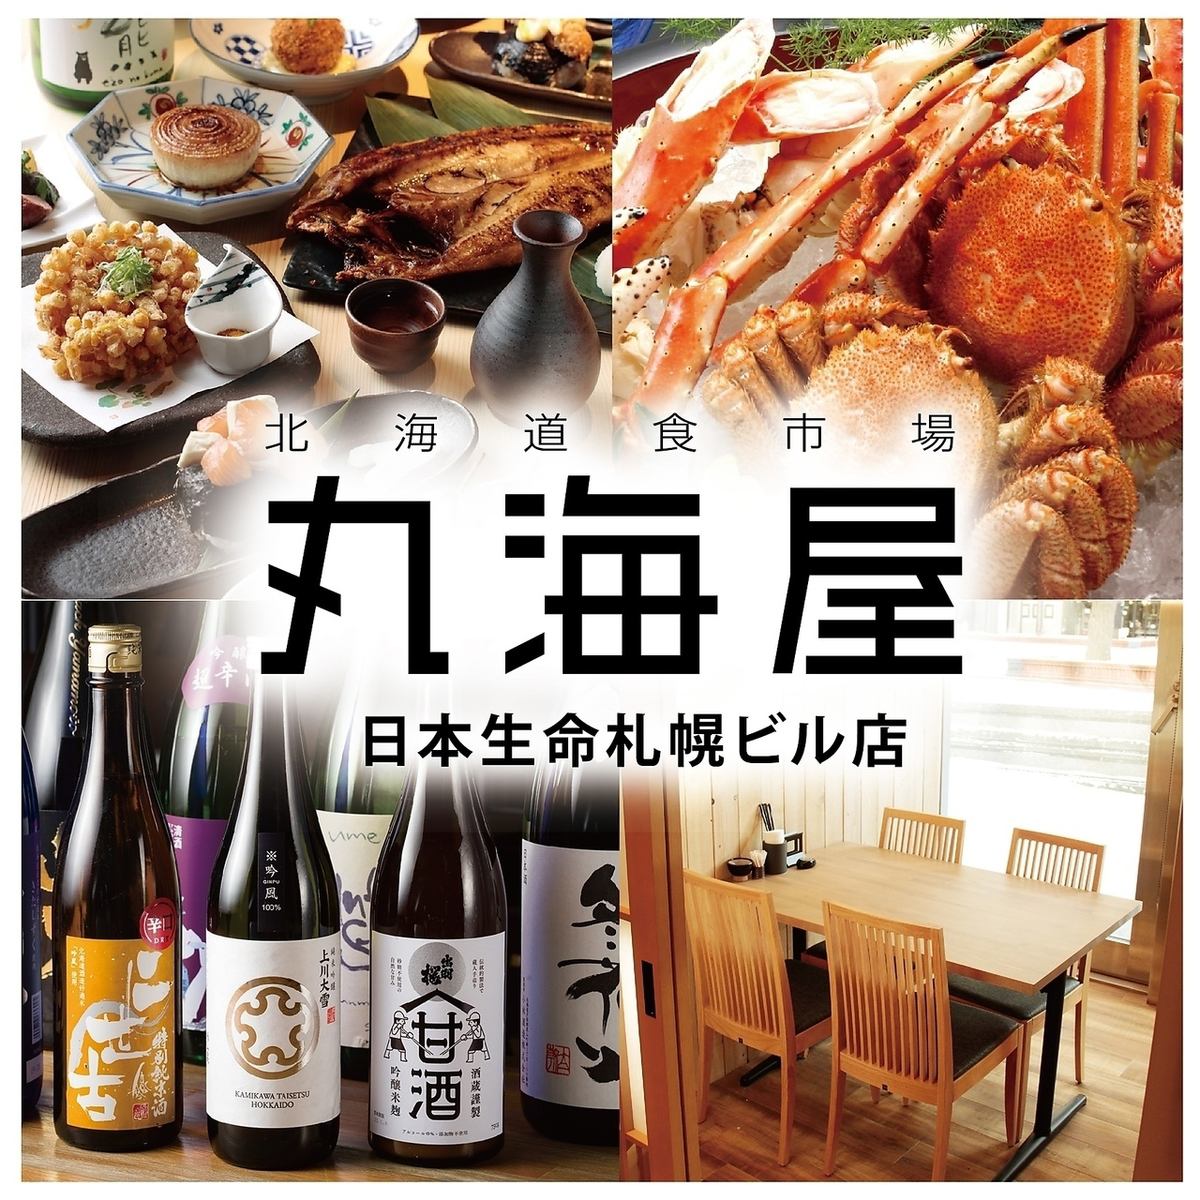 札幌駅周辺で北海道の幸を堪能できる居酒屋です。ゆとりのある空間で個室もございます